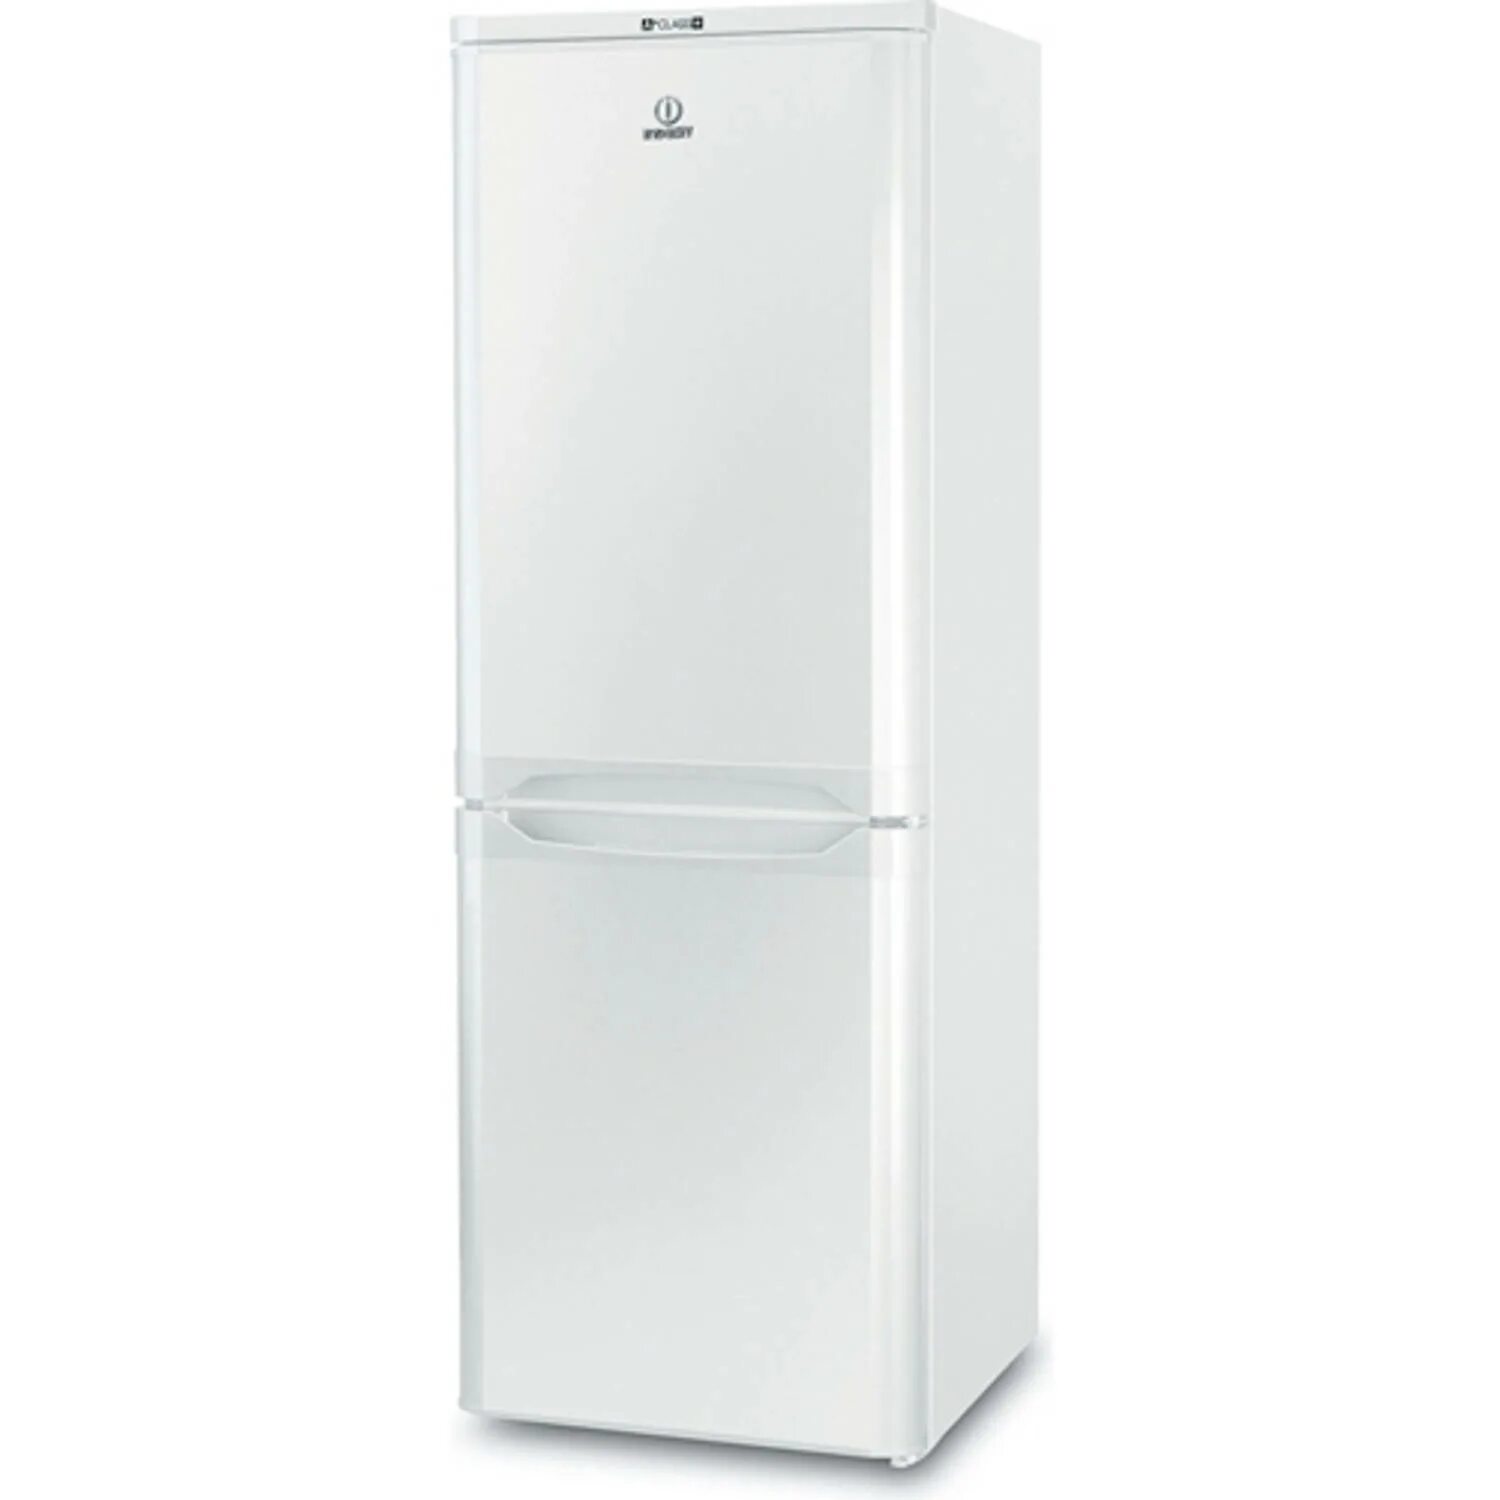 Новые холодильники индезит. Холодильник Индезит 207170130.